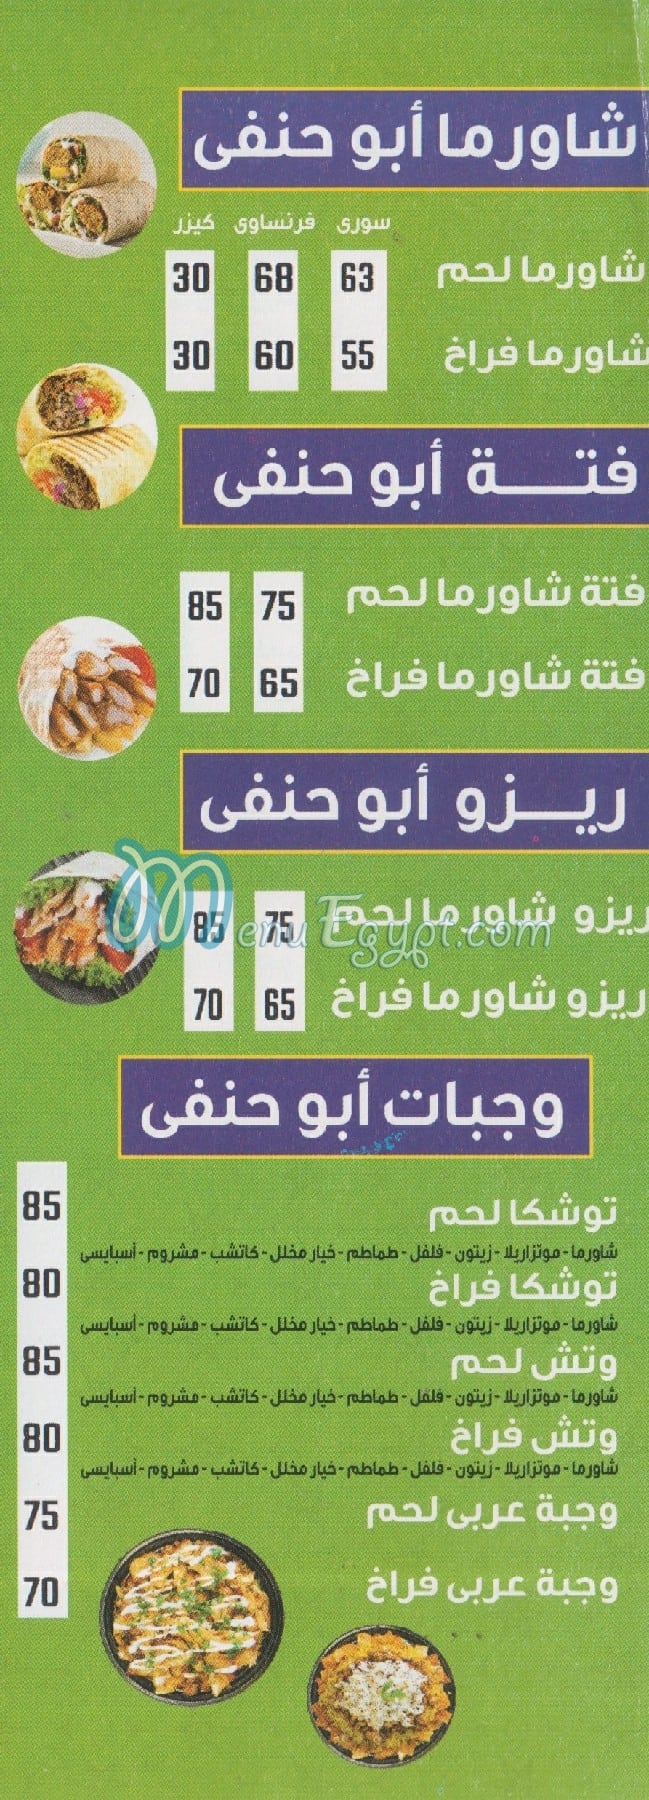 مطعم كشري ابوحنفي مصر